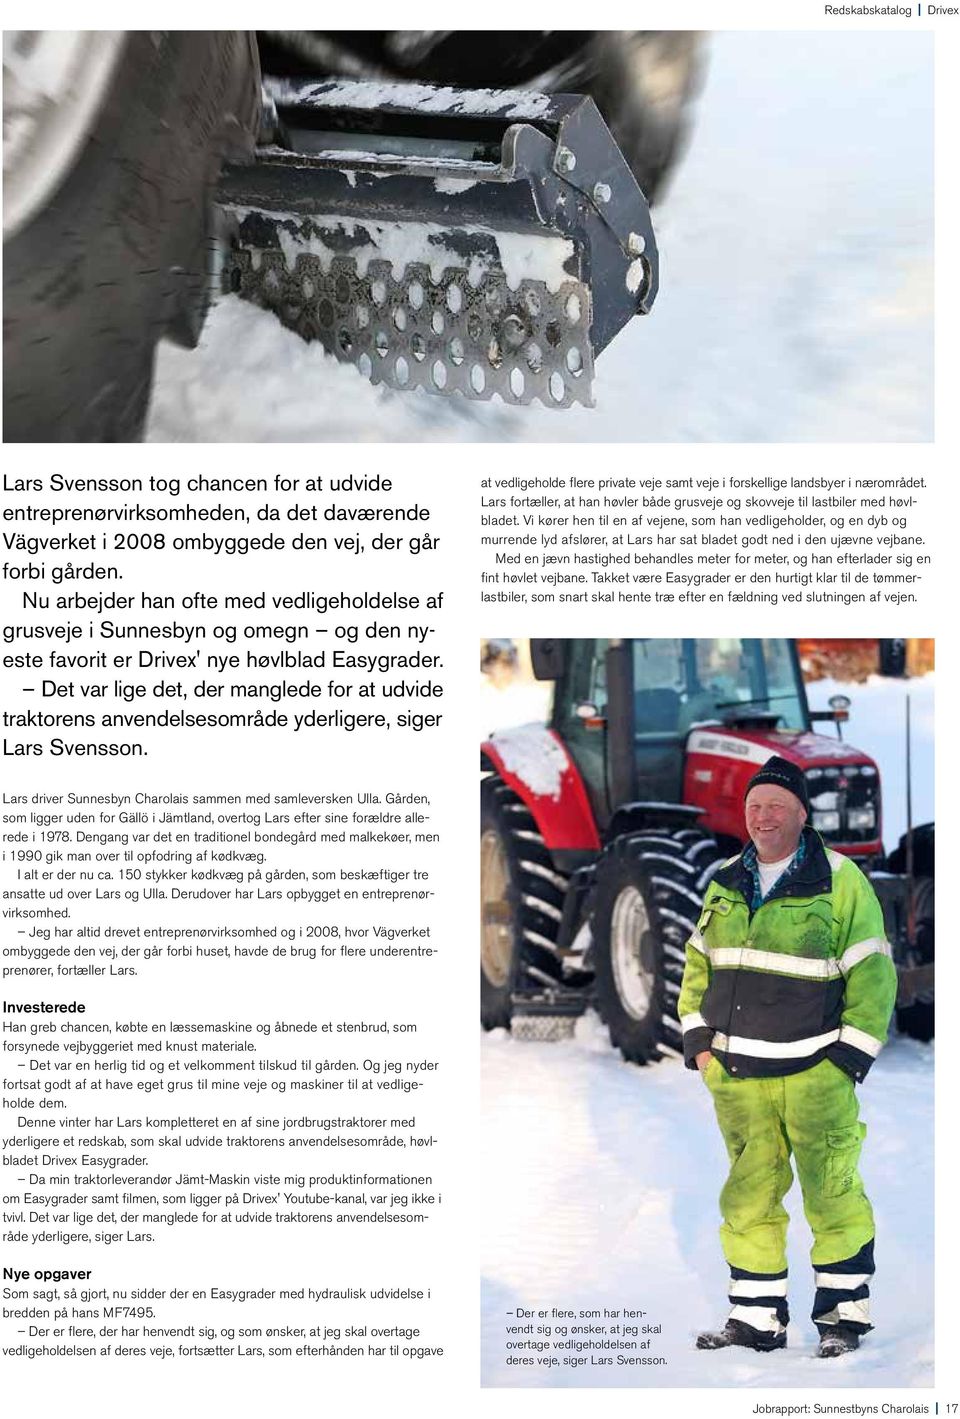 Det var lige det, der manglede for at udvide traktorens anvendelsesområde yderligere, siger Lars Svensson. at vedligeholde flere private veje samt veje i forskellige landsbyer i nærområdet.